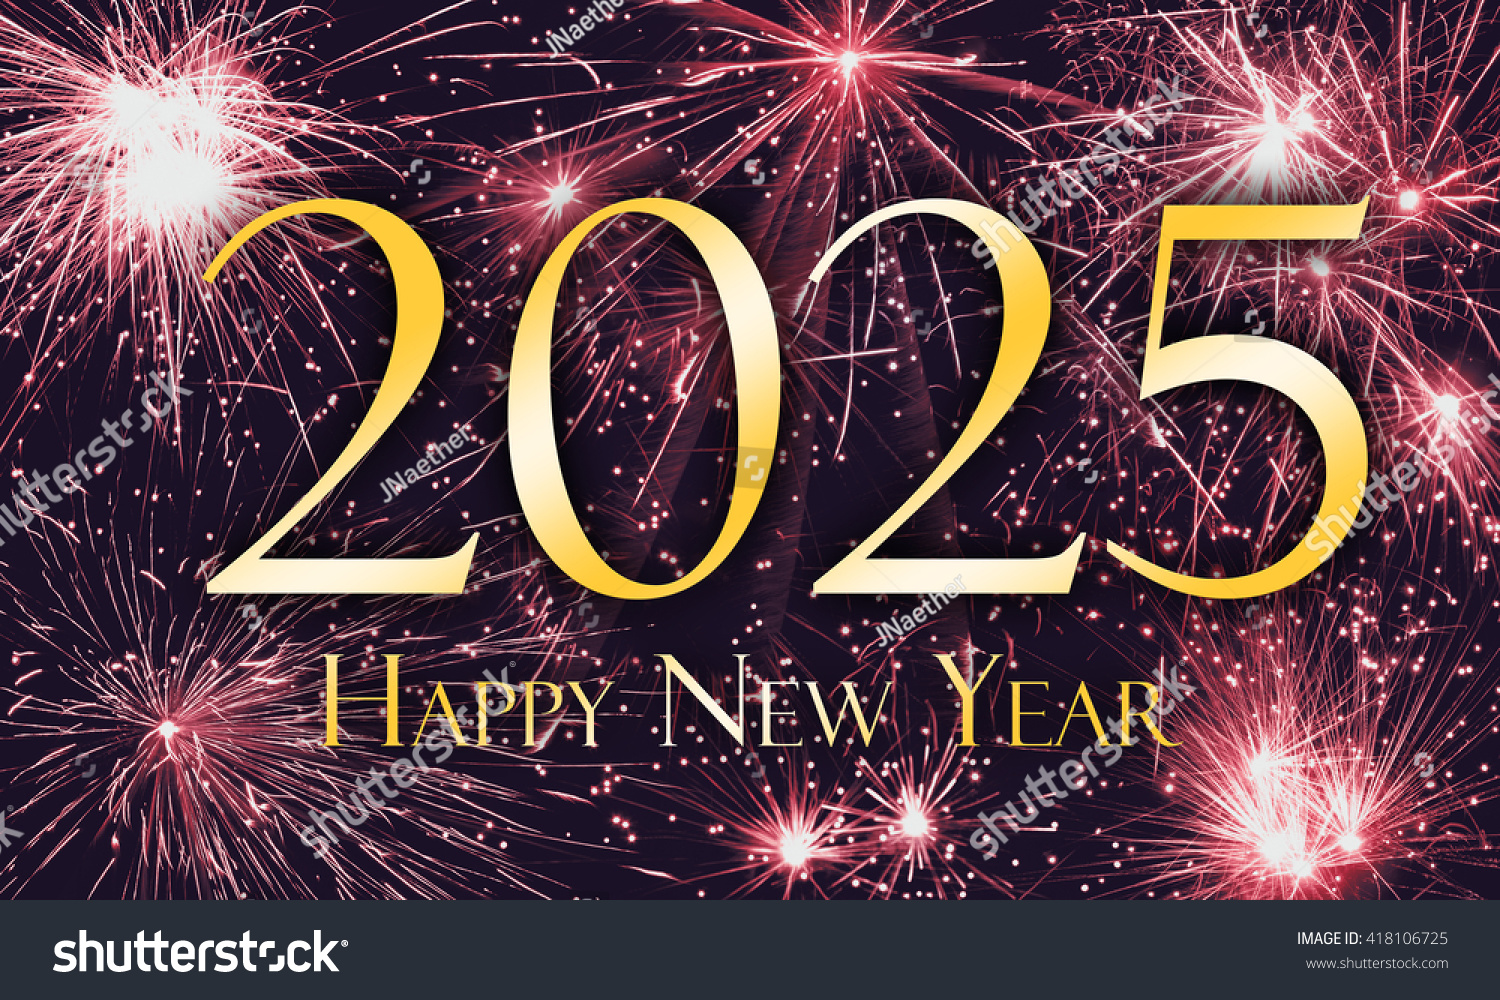 Happy New Year 2025 Stock Photo 418106725 Shutterstock